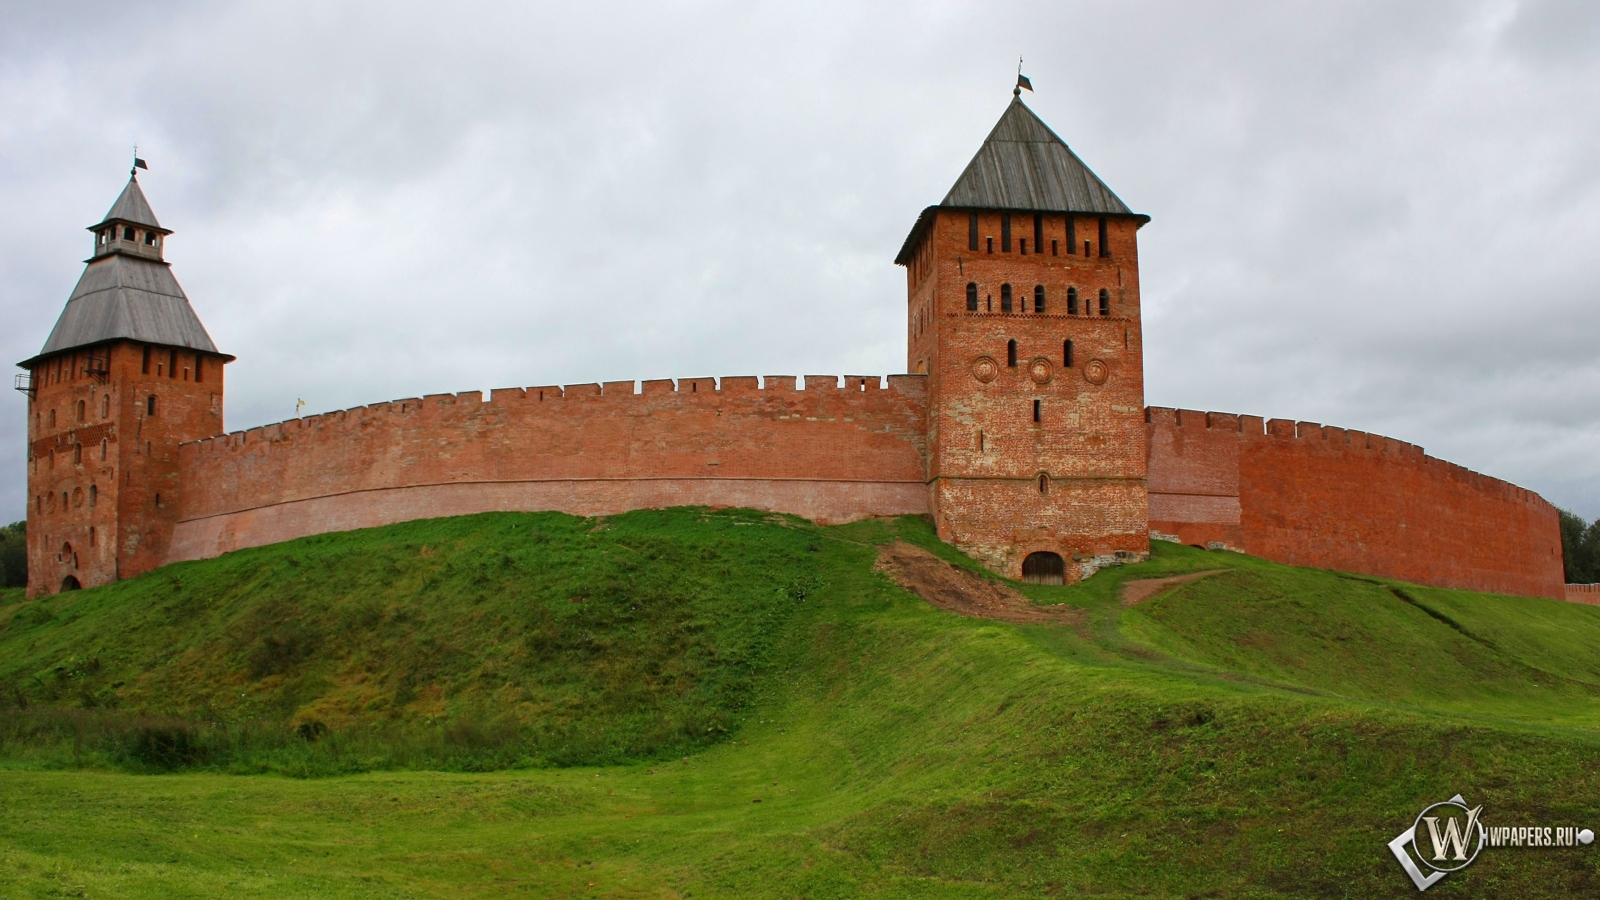 Кремль Великий Новгород 1600x900